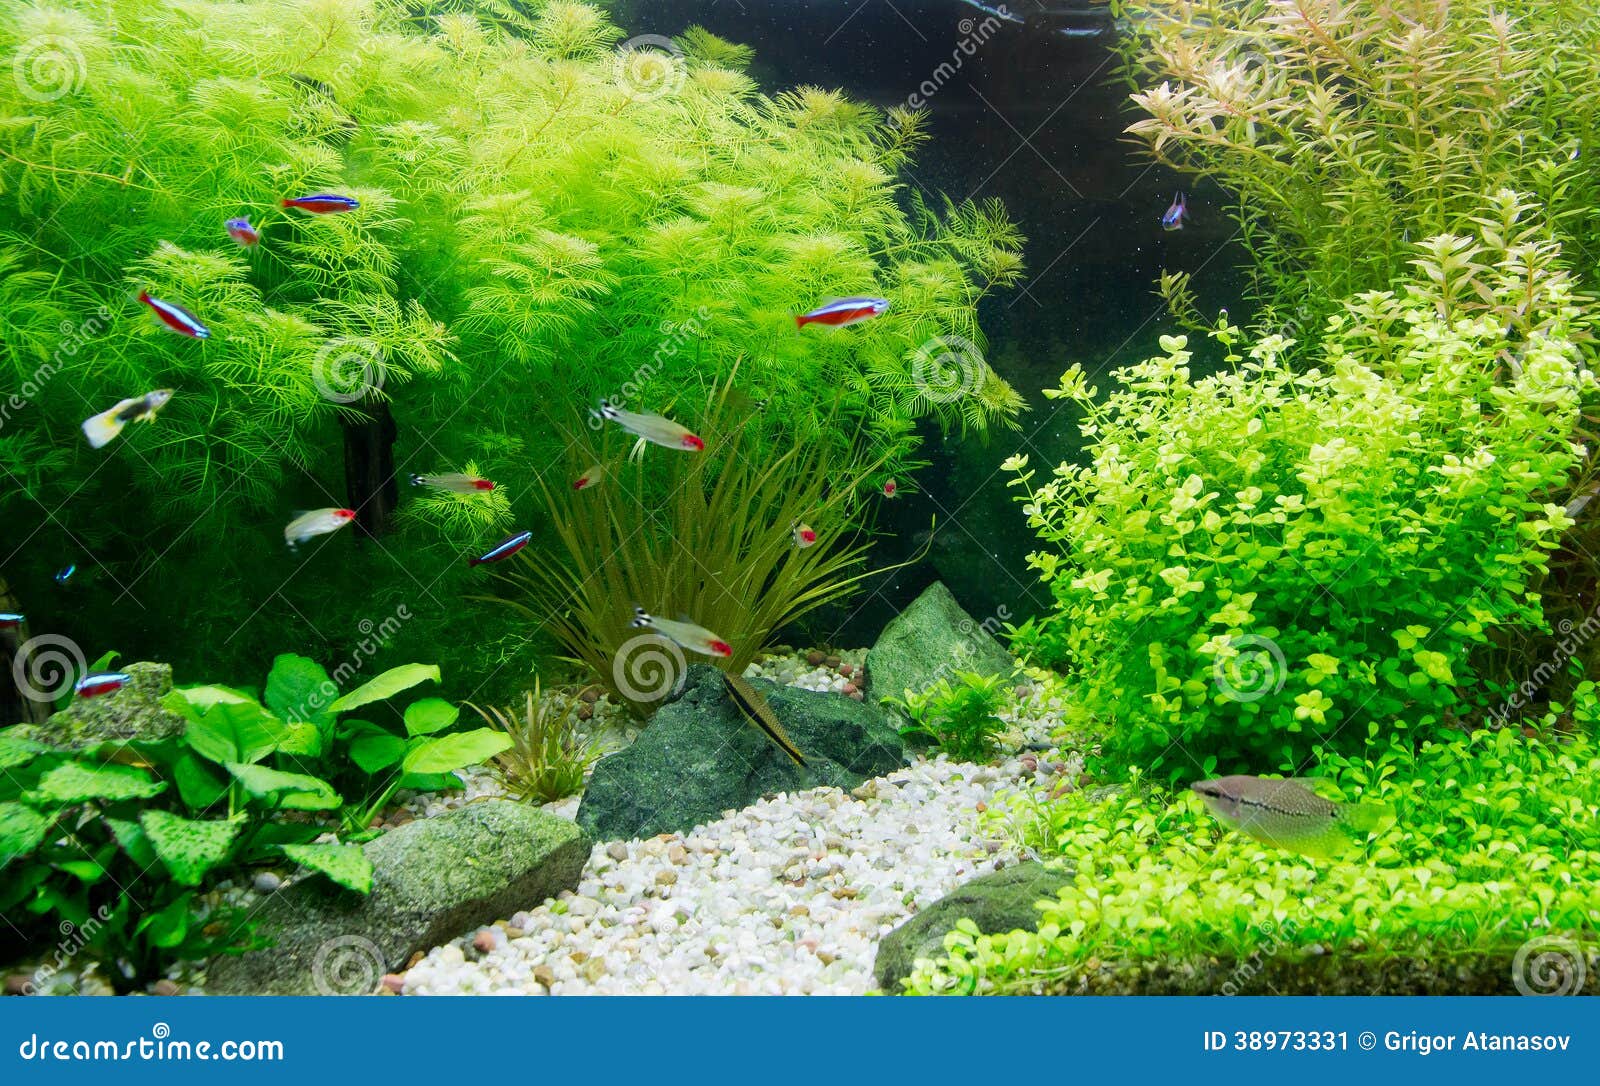 freshwater aquarium